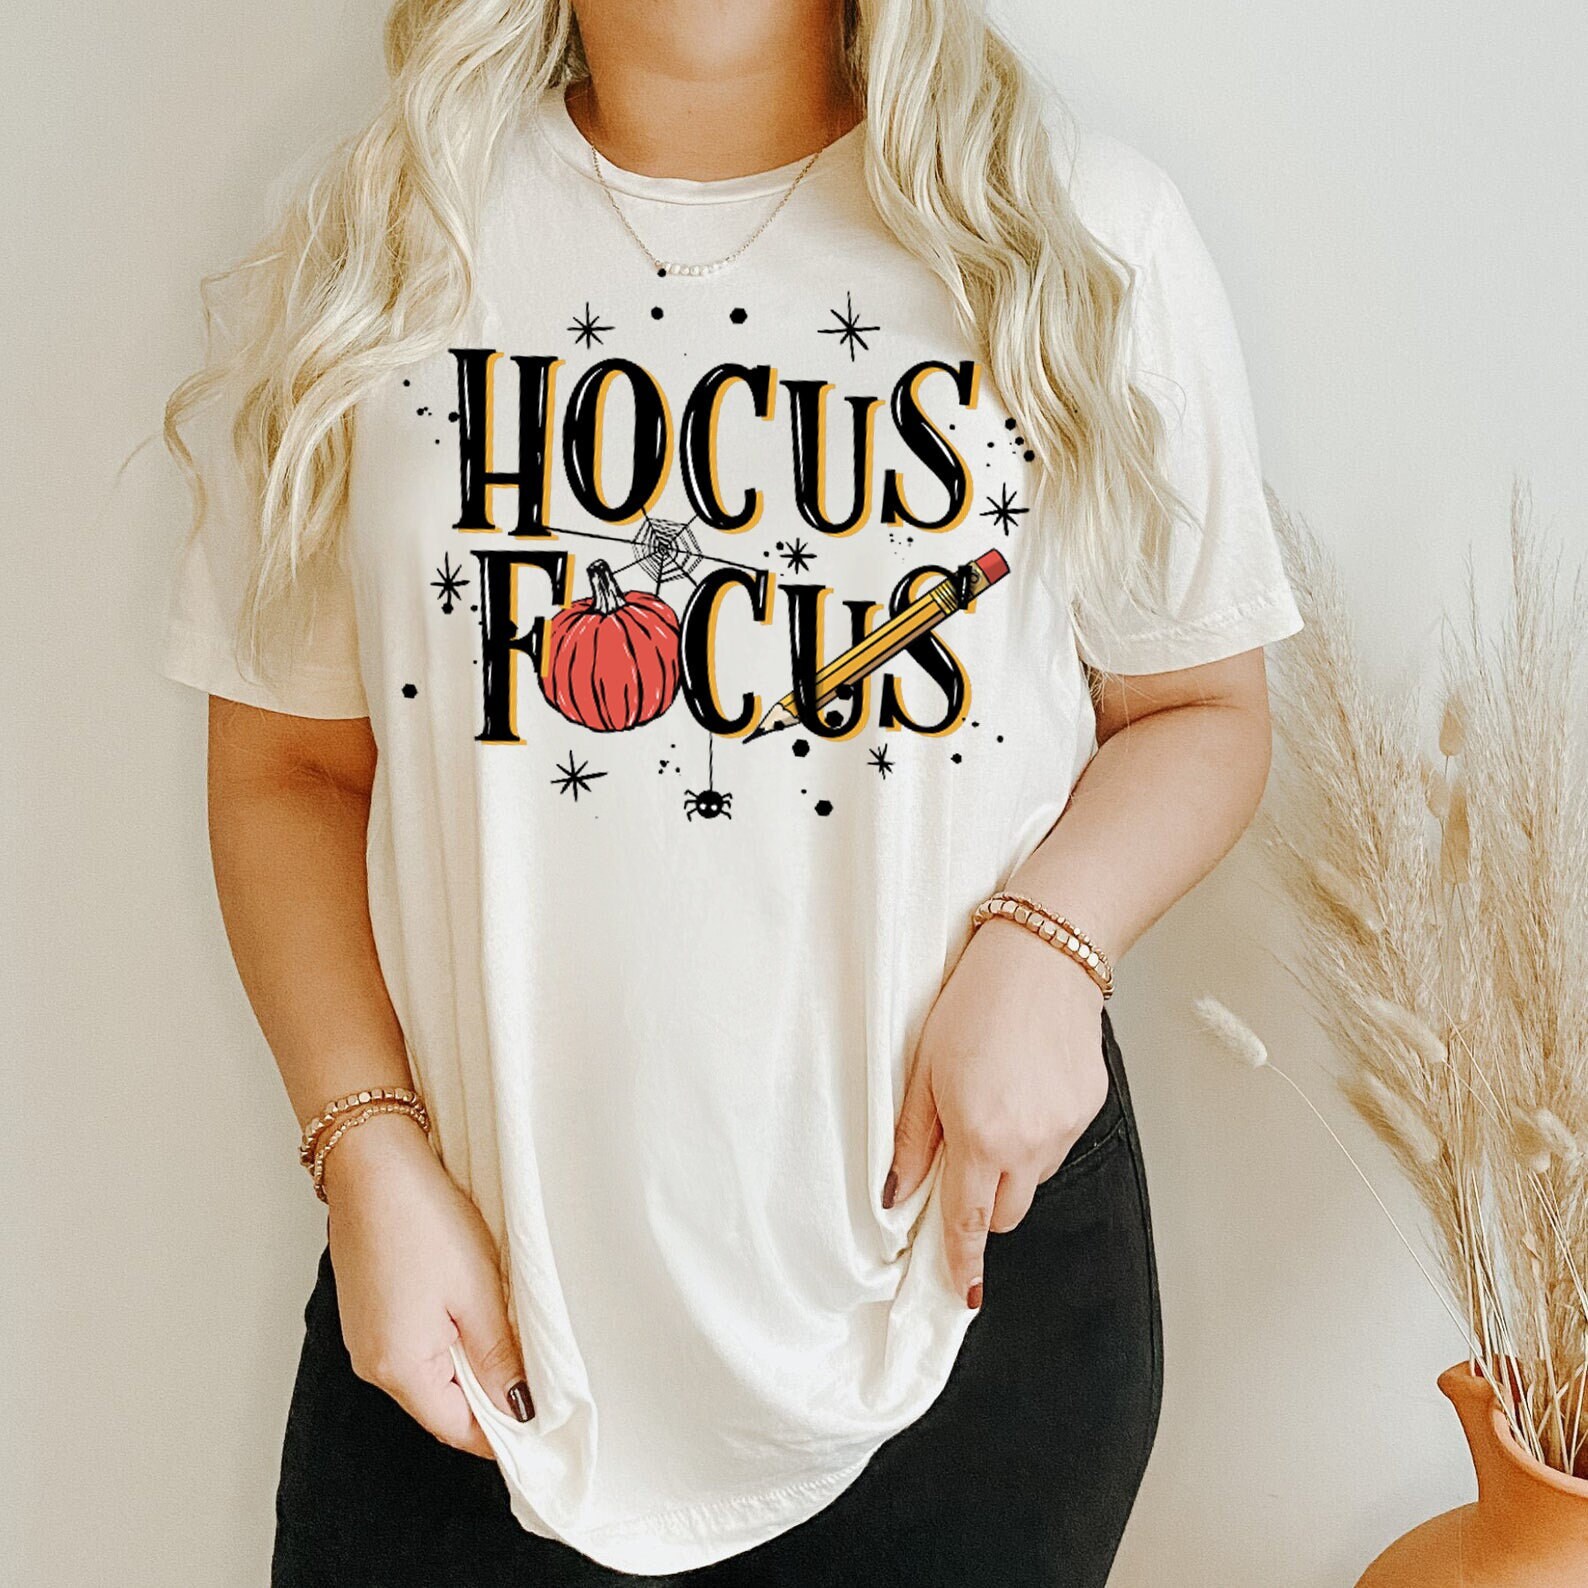 Hocus Focus Teacher Shirt Teacher's Gifts Teacher - Etsy